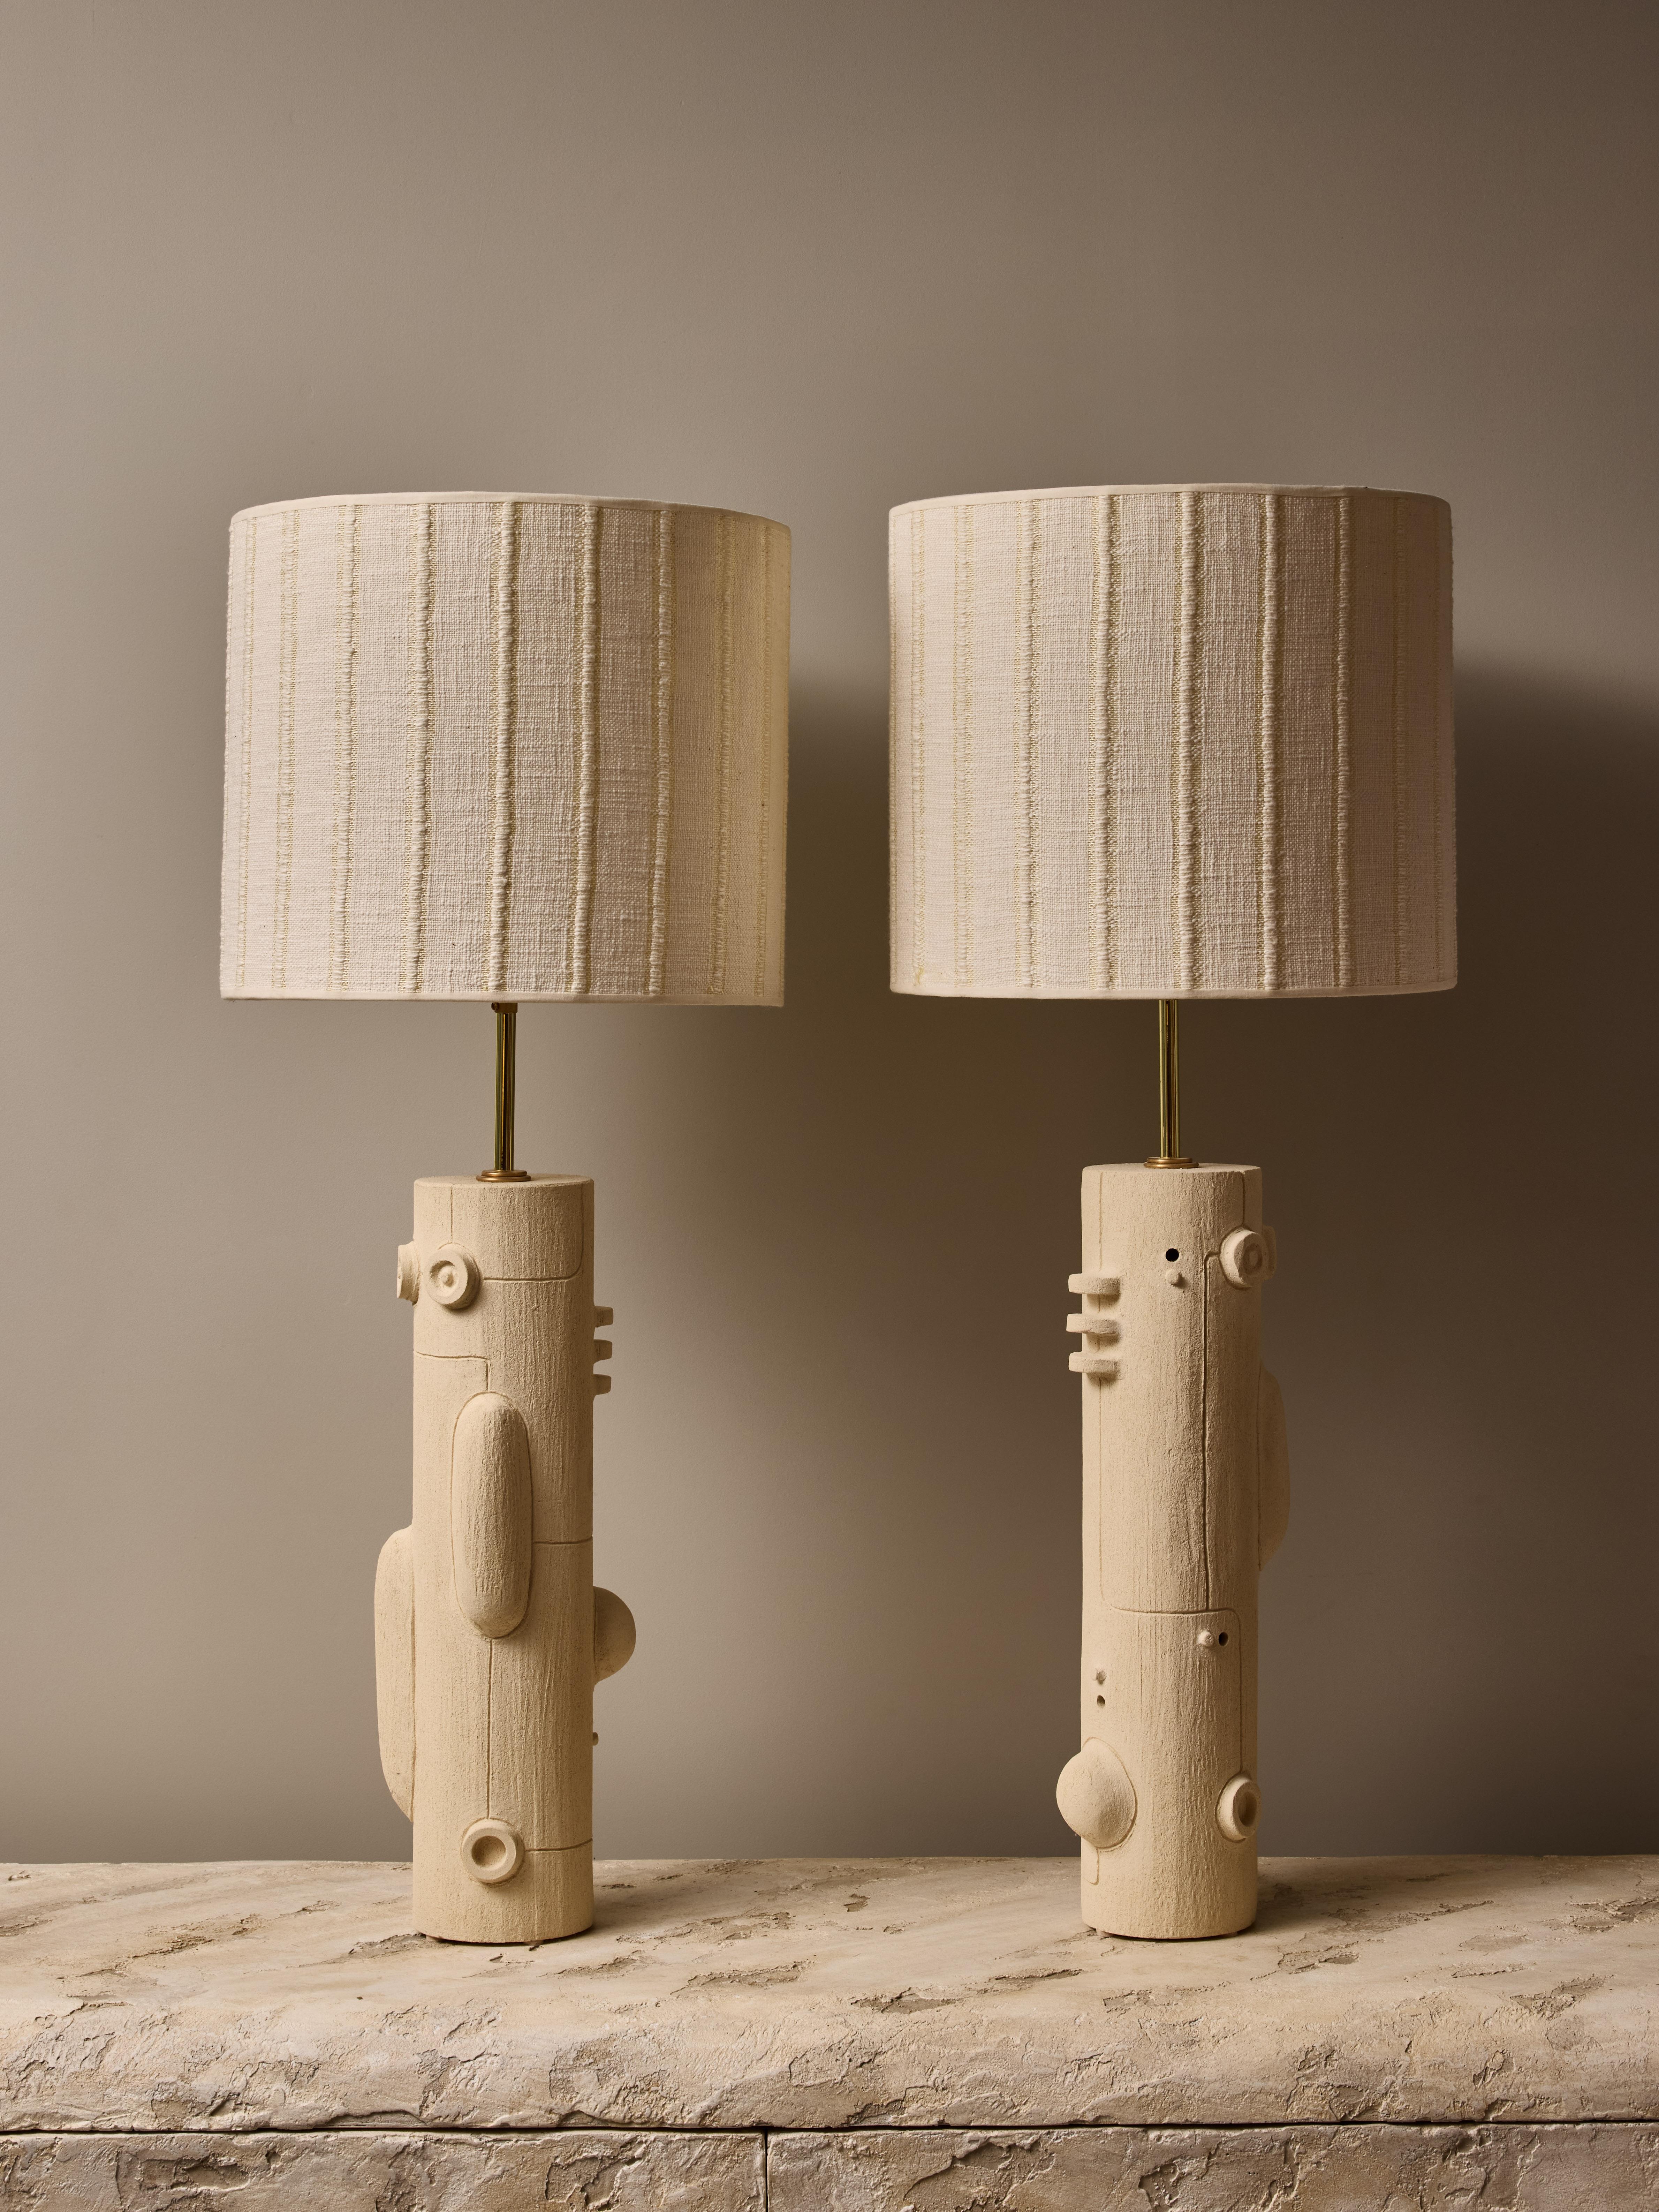 Ein Paar Keramik-Tischlampen von der talentierten französischen Künstlerin Olivia Cognet.

Diese dünnen röhrenförmigen Lampen haben ein gespiegeltes Labyrinthdesign mit weichen geometrischen Formen und dünnen Linien, Messingbeschläge und einen